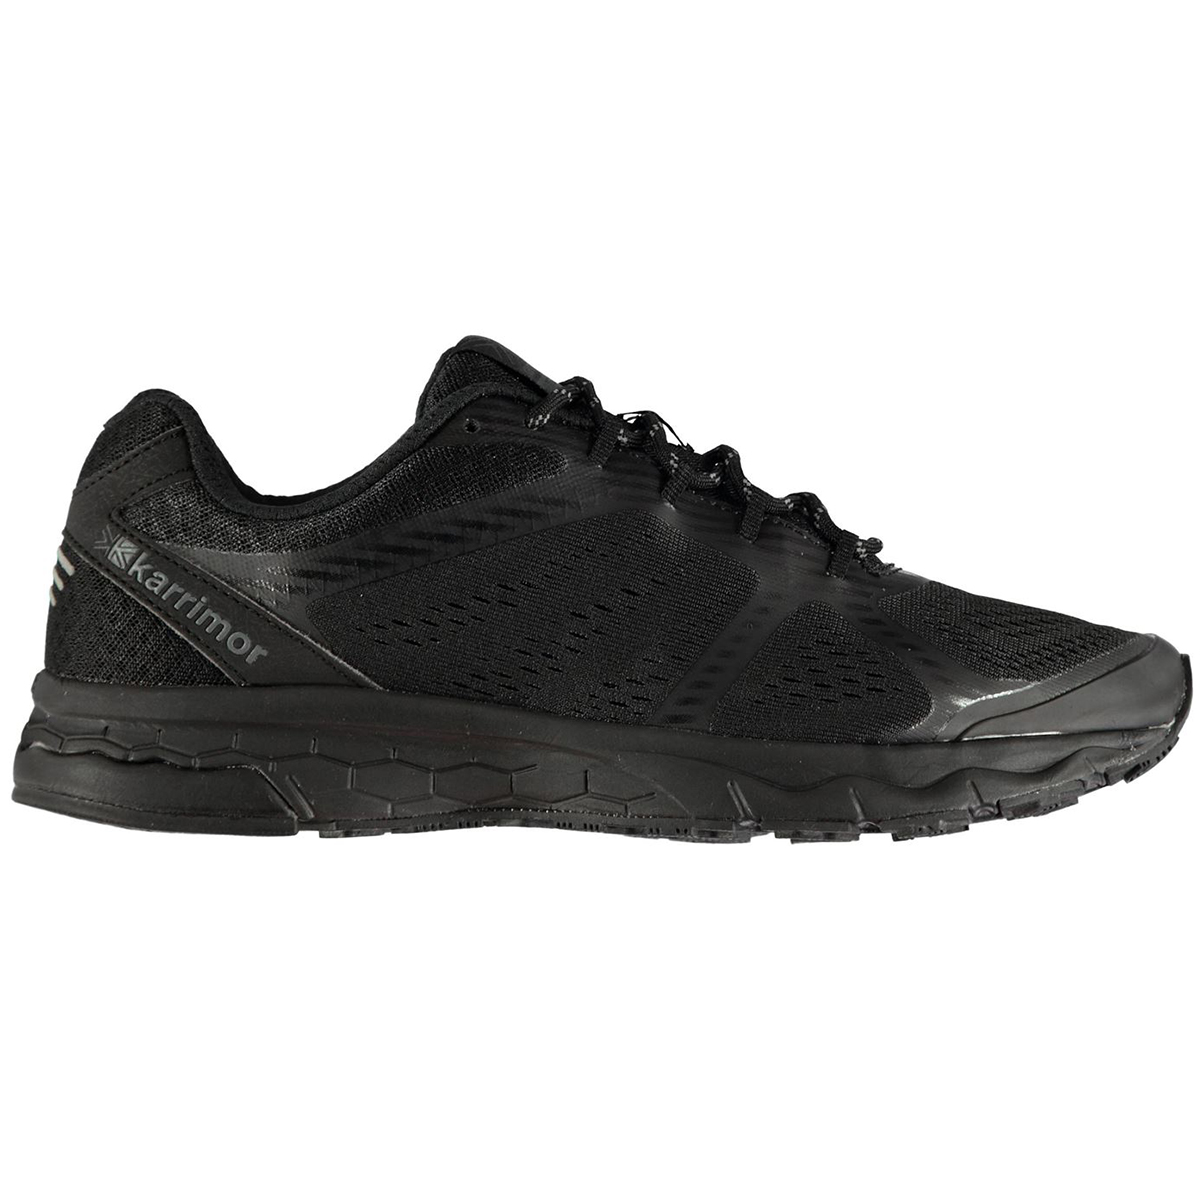 Karrimor Men's Tempo 5 Running Shoes - Black, 9